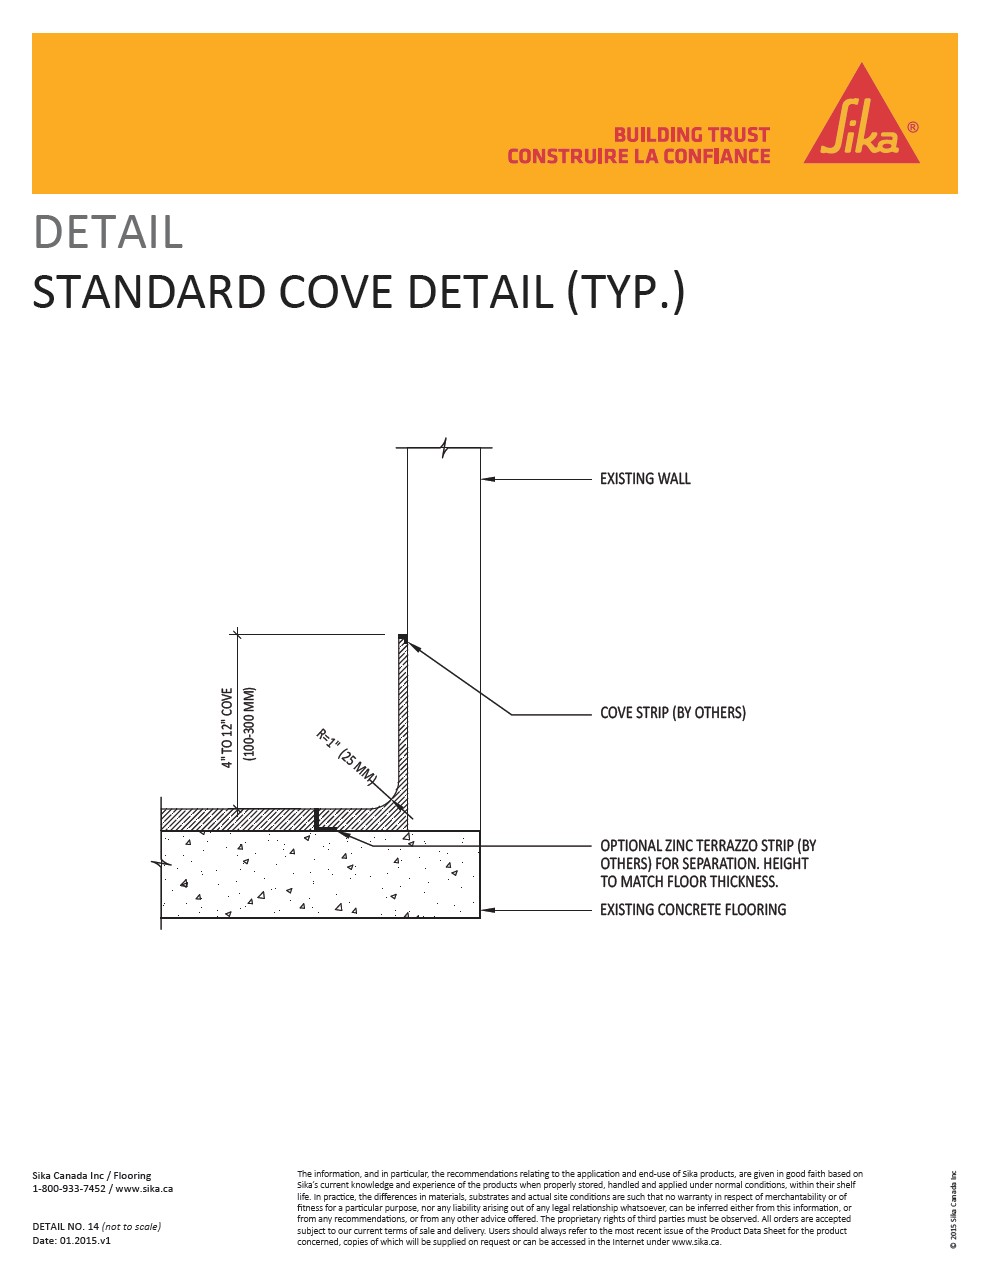  14-Standard Cove